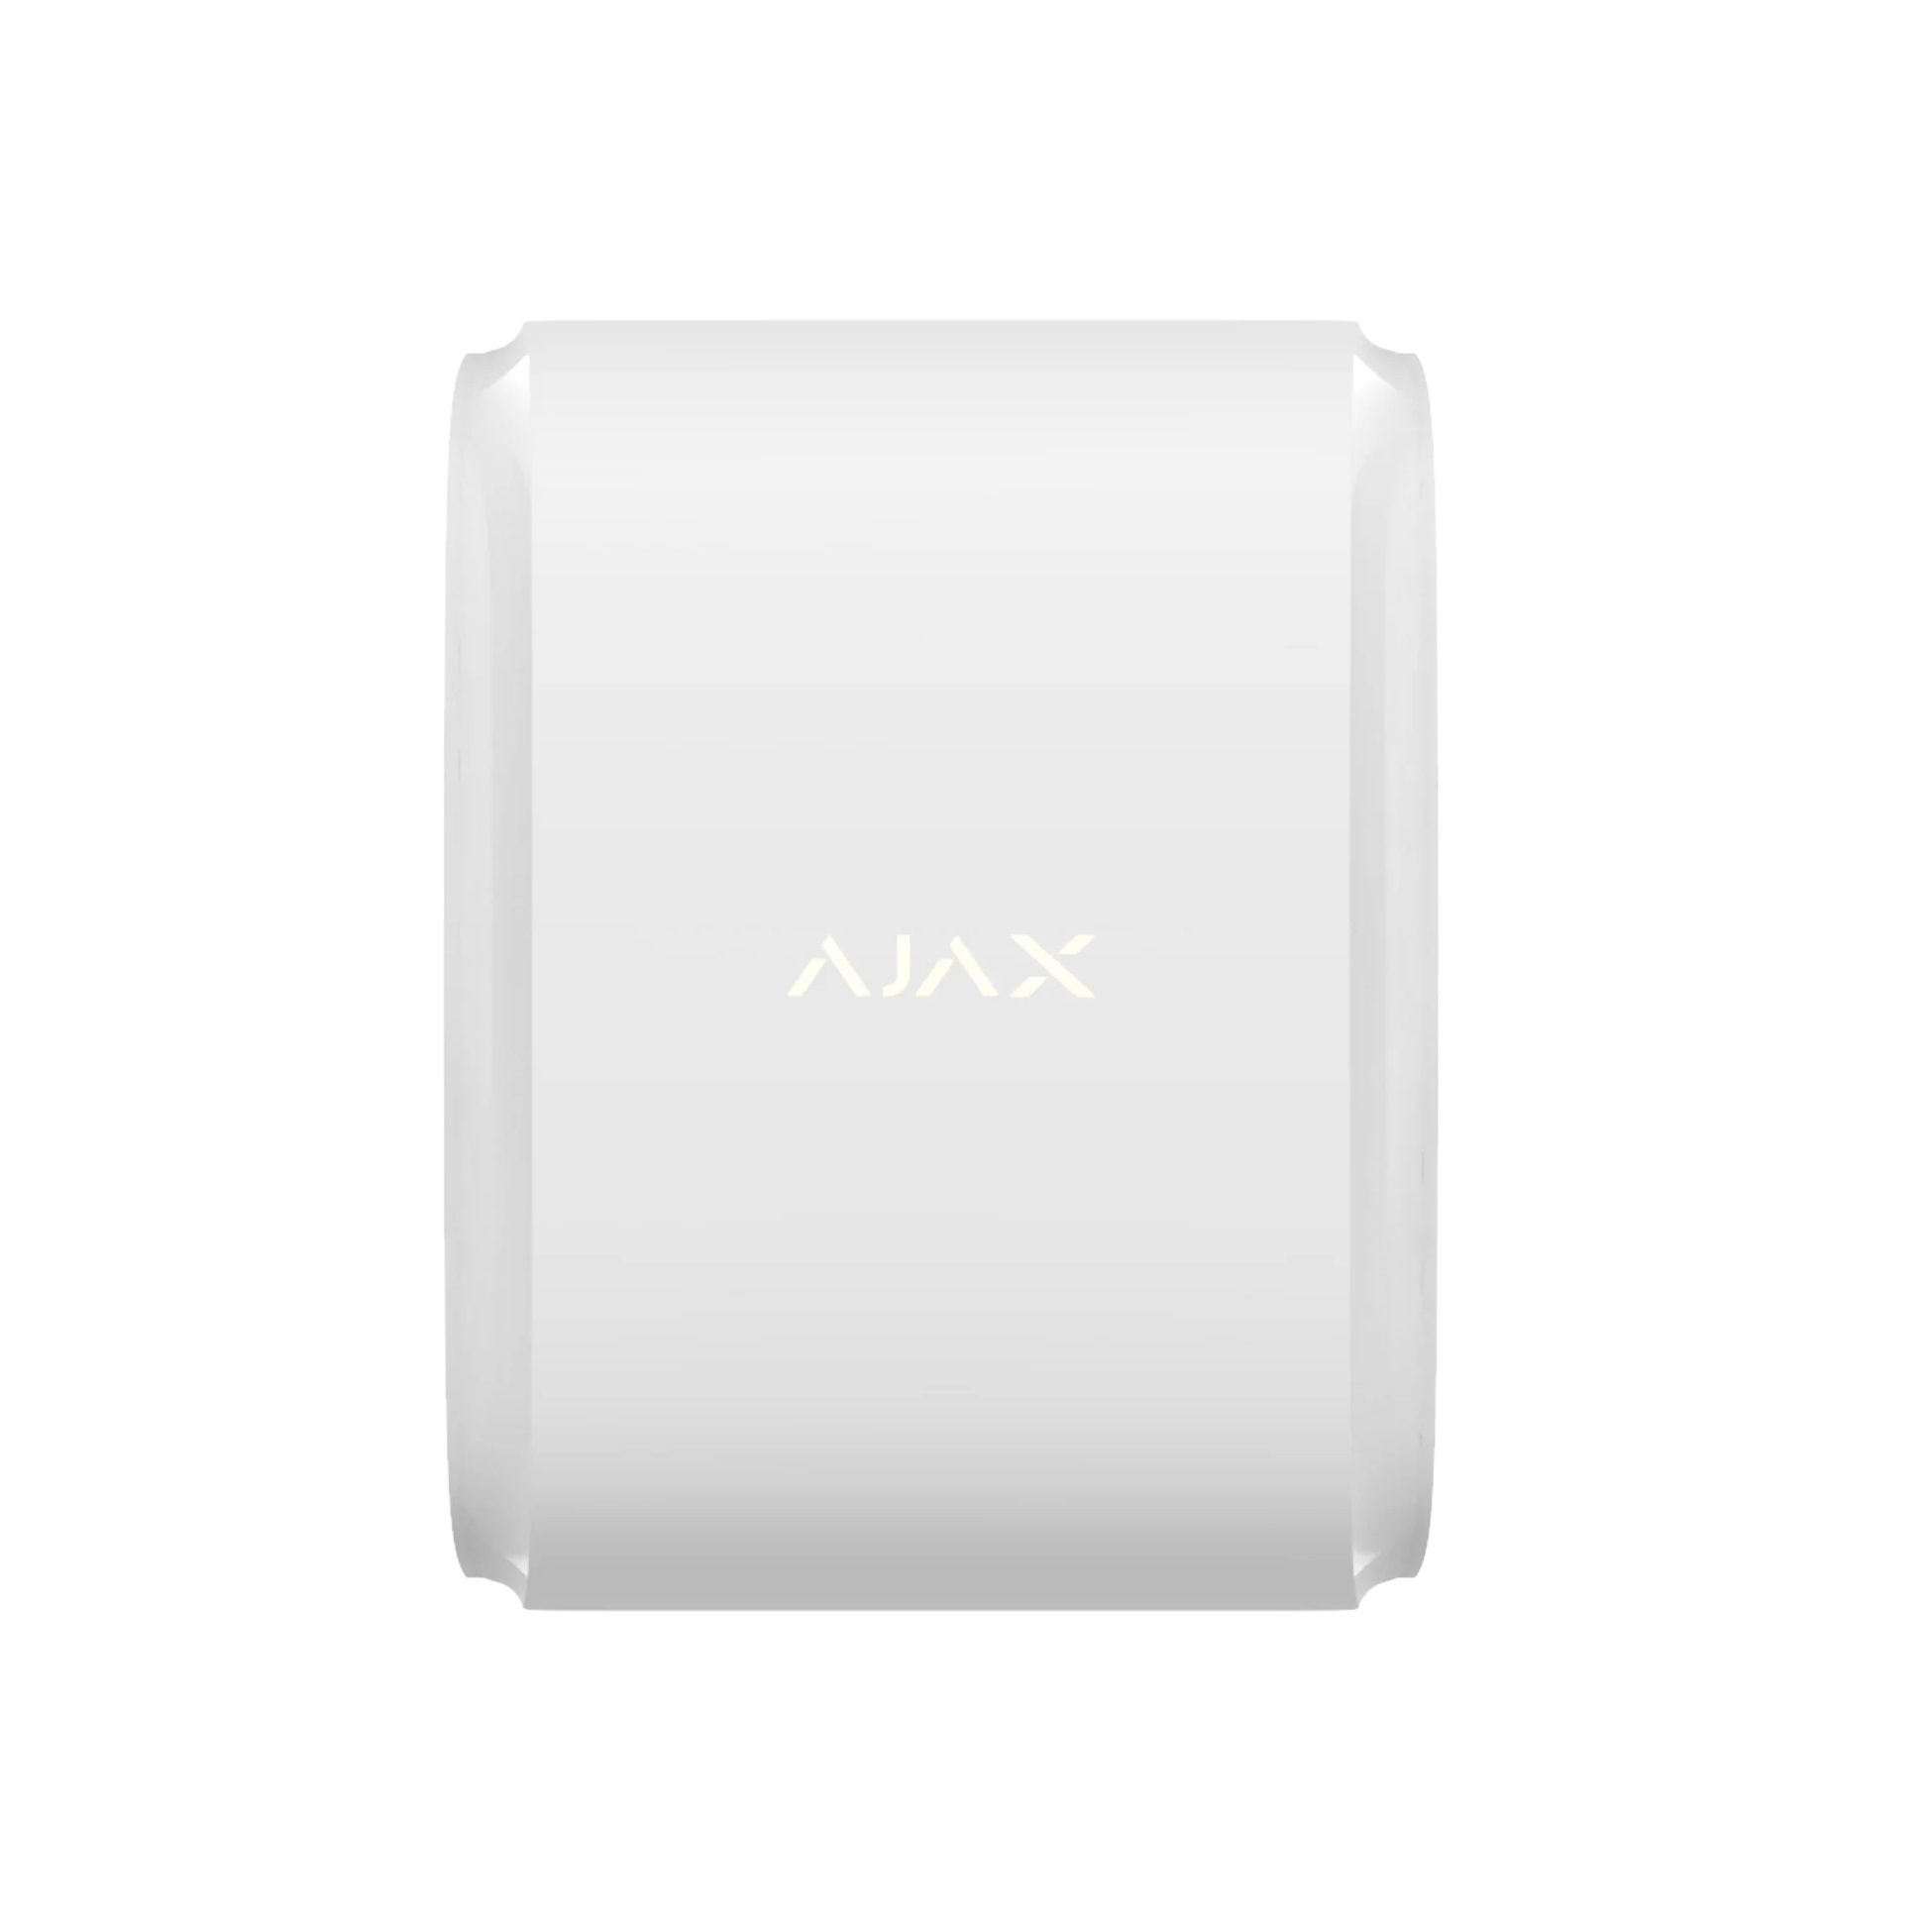  Ajax - Lưới cảm biến chuyển động 2 chiều ngoài trời DualCurtain Outdoor Jeweller 